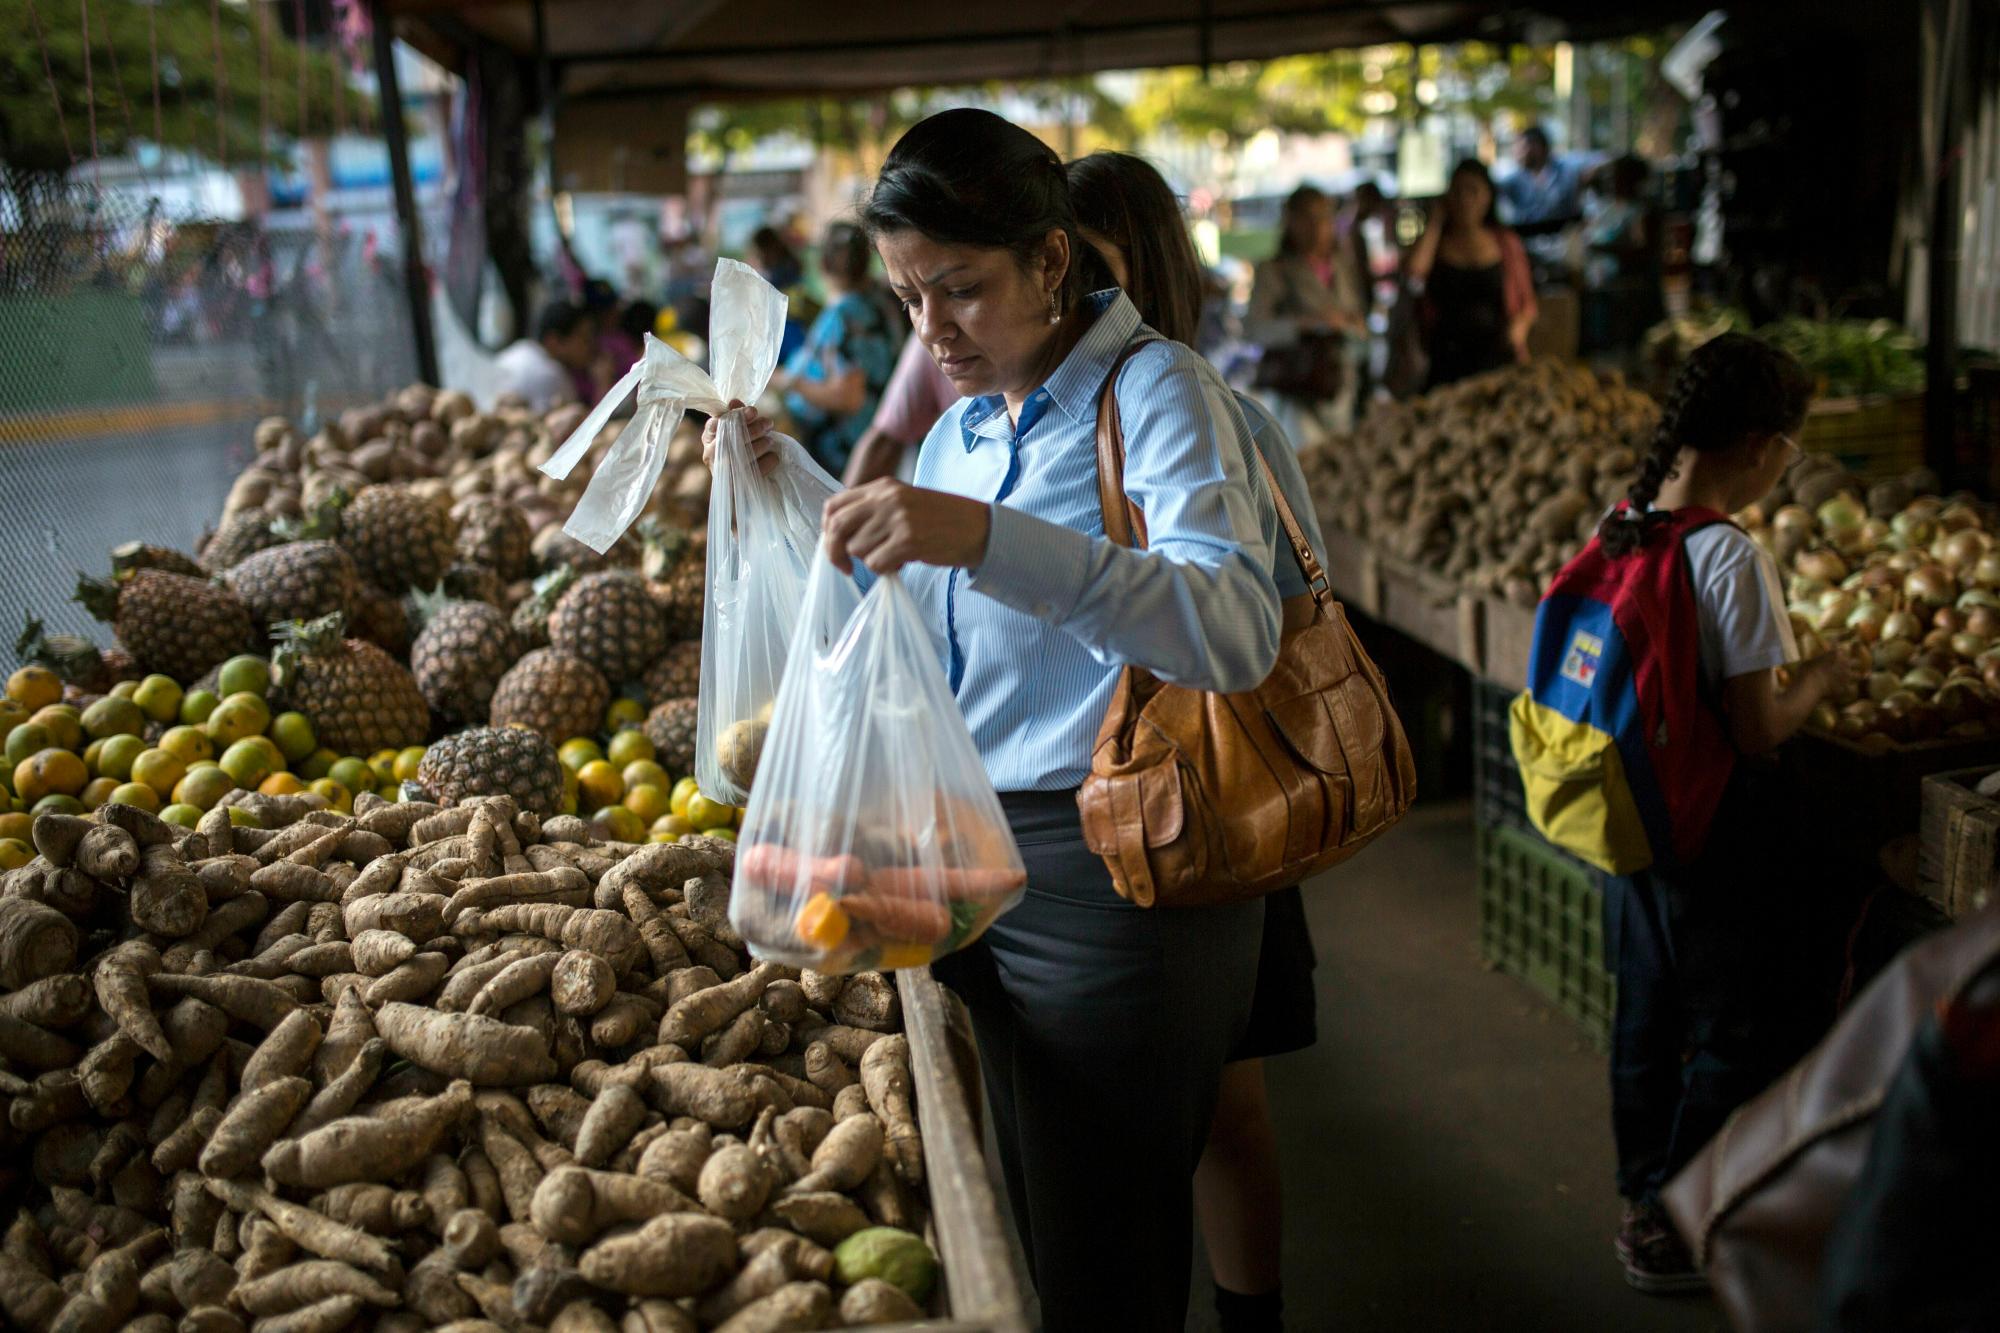 En esta foto del 14 de febrero de 2019, Carmen Victoria Giménez, de 43 años, compra en un mercado de agricultores en el distrito de clase media de Los Dos Caminos, en Caracas, Venezuela. “Gano mucho más que el precio mínimo y sigo luchando”, dijo. “Ni siquiera puedo imaginar cómo sobreviven los más pobres entre los pobres”.